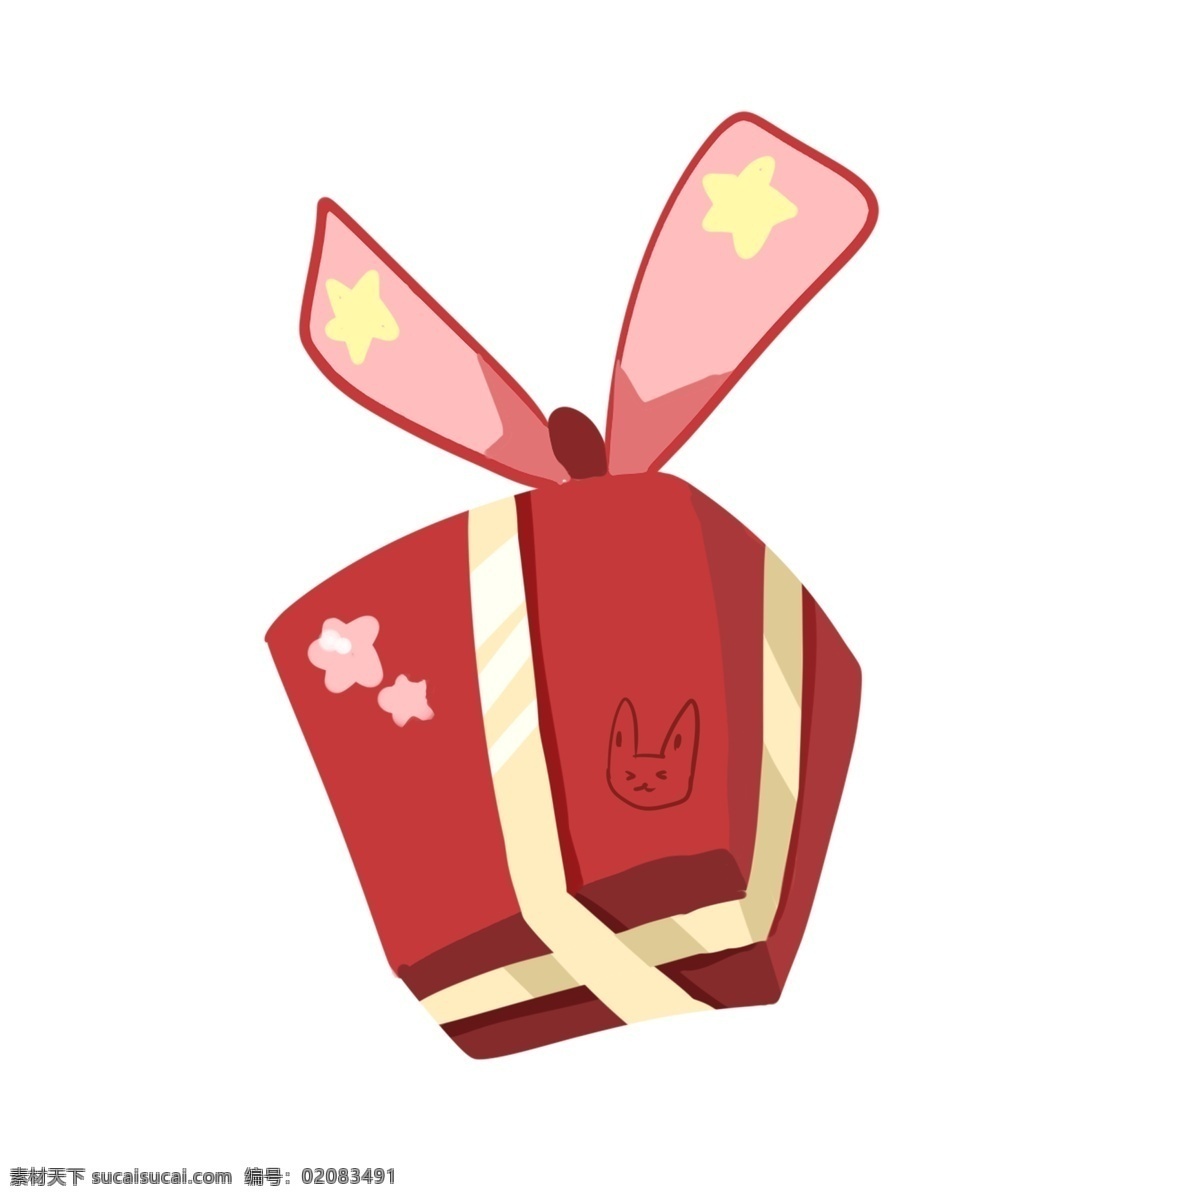 红色 新年 礼物 元素 中国风 新年礼物 星星装饰 可爱 手绘 风格 红色带子 红色礼物箱